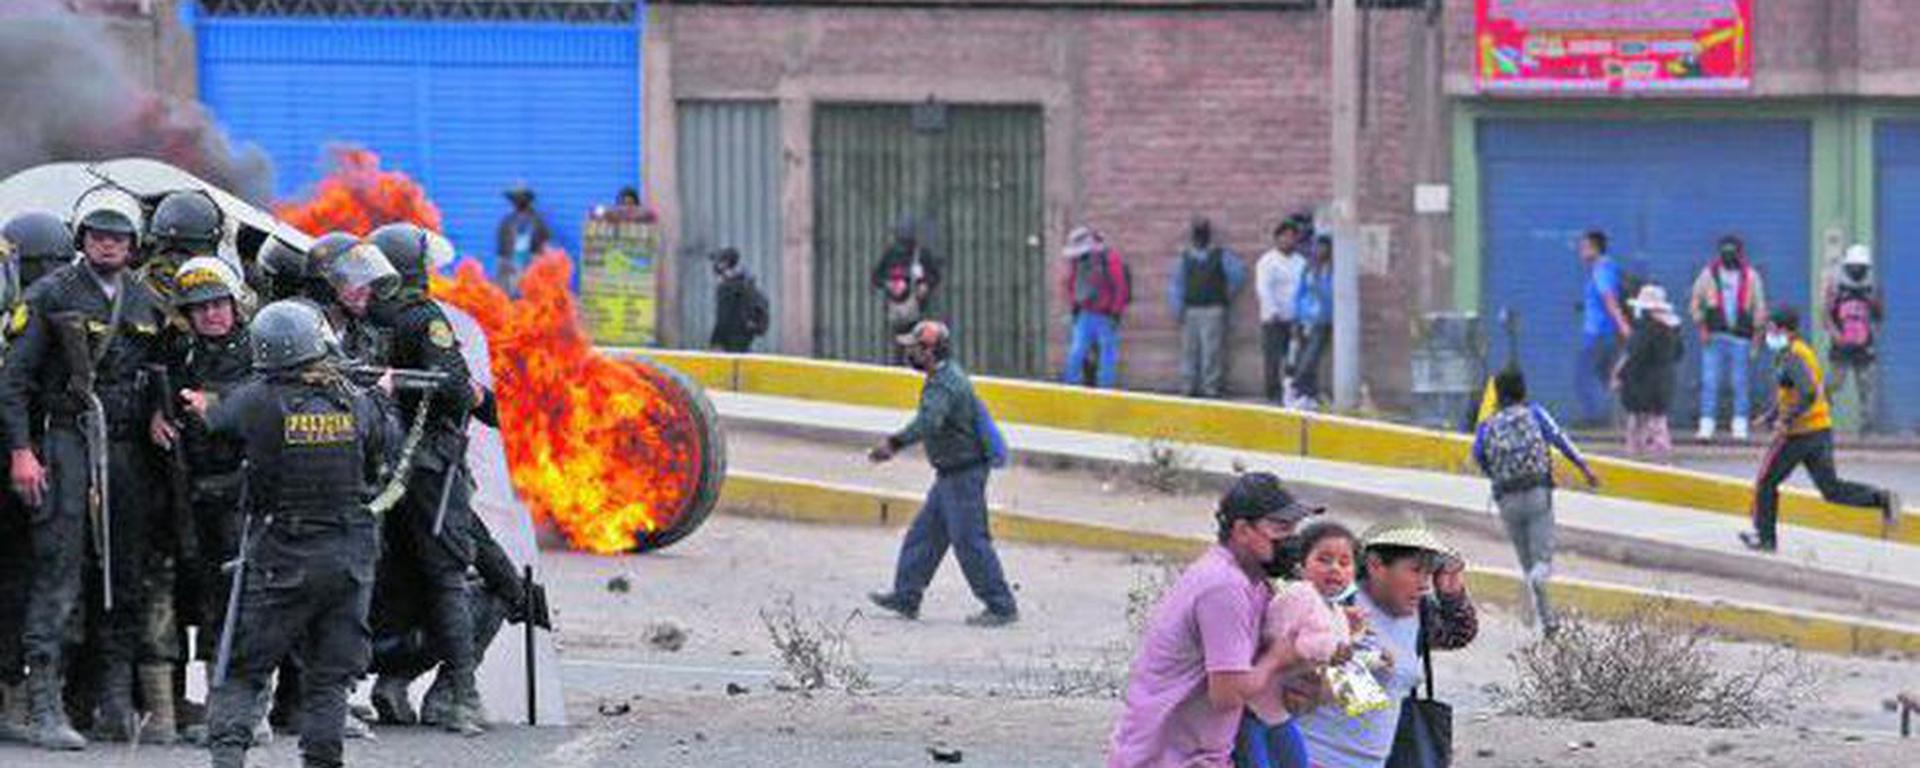 Turismo en Puno: ¿Cómo está siendo afectada la región del sur ante violentas protestas?